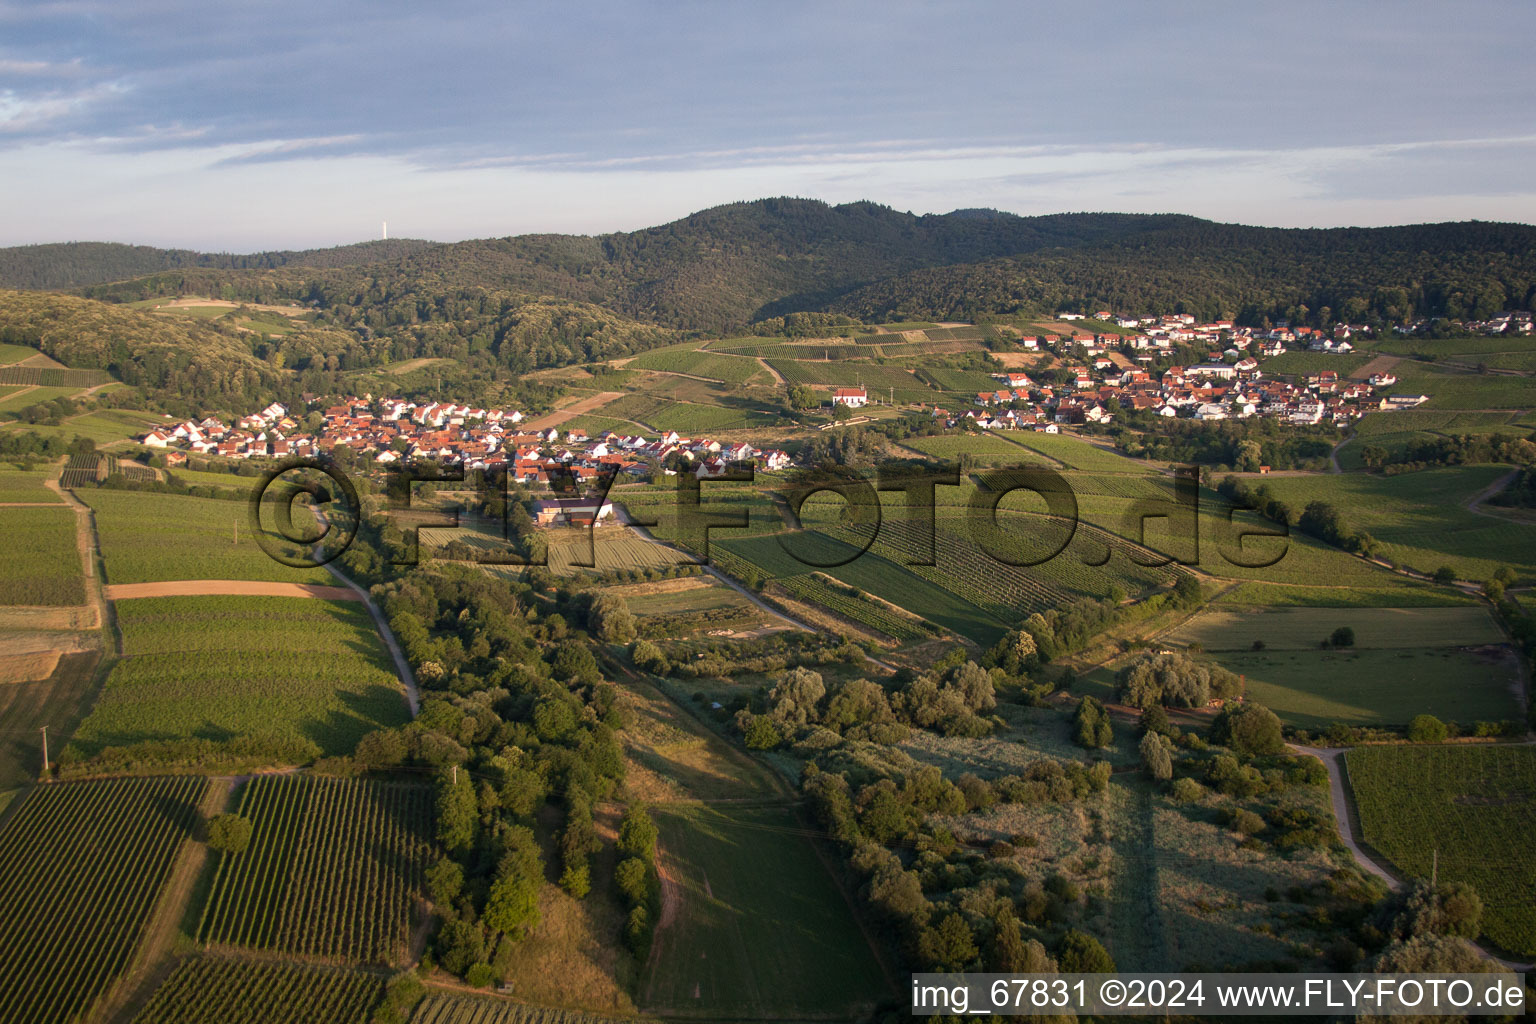 Vue aérienne de Zone locale et environs sur le Haardtrand à le quartier Gleishorbach in Gleiszellen-Gleishorbach dans le département Rhénanie-Palatinat, Allemagne